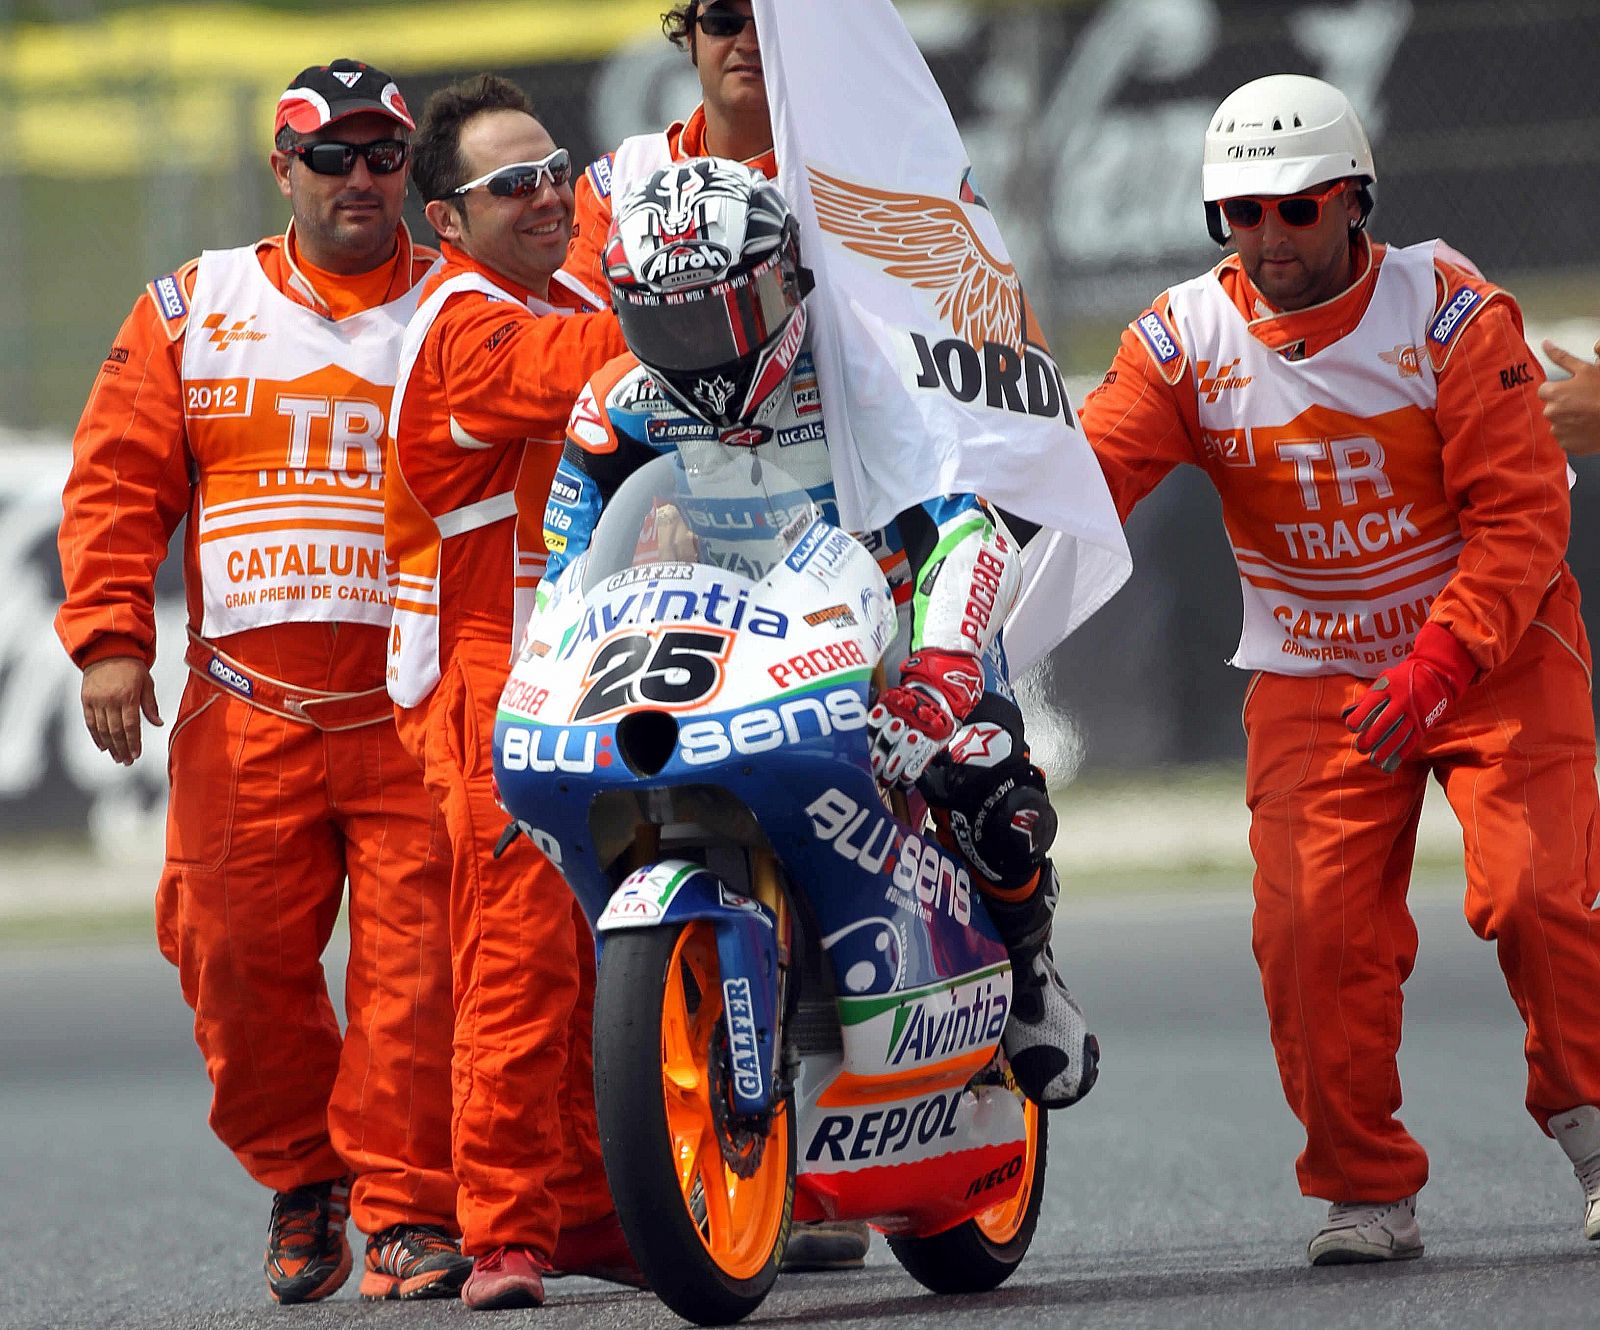 El piloto español de Moto3 Maverick Viñales celebra su victoria en el Gran Premio de Motociclismo de Catalunya.